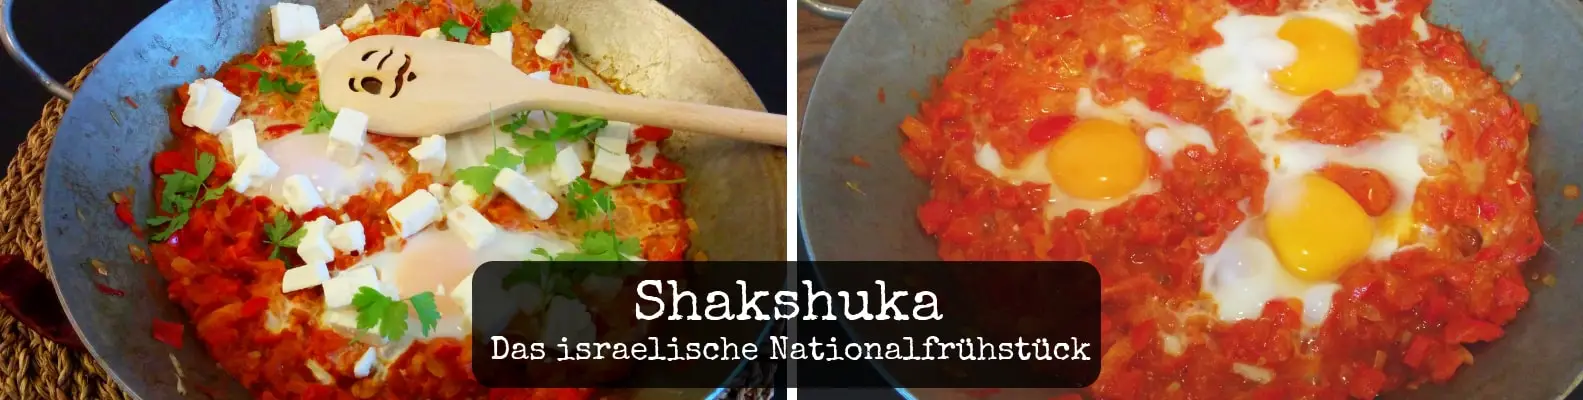 Israelisches Shakshuka Rezept